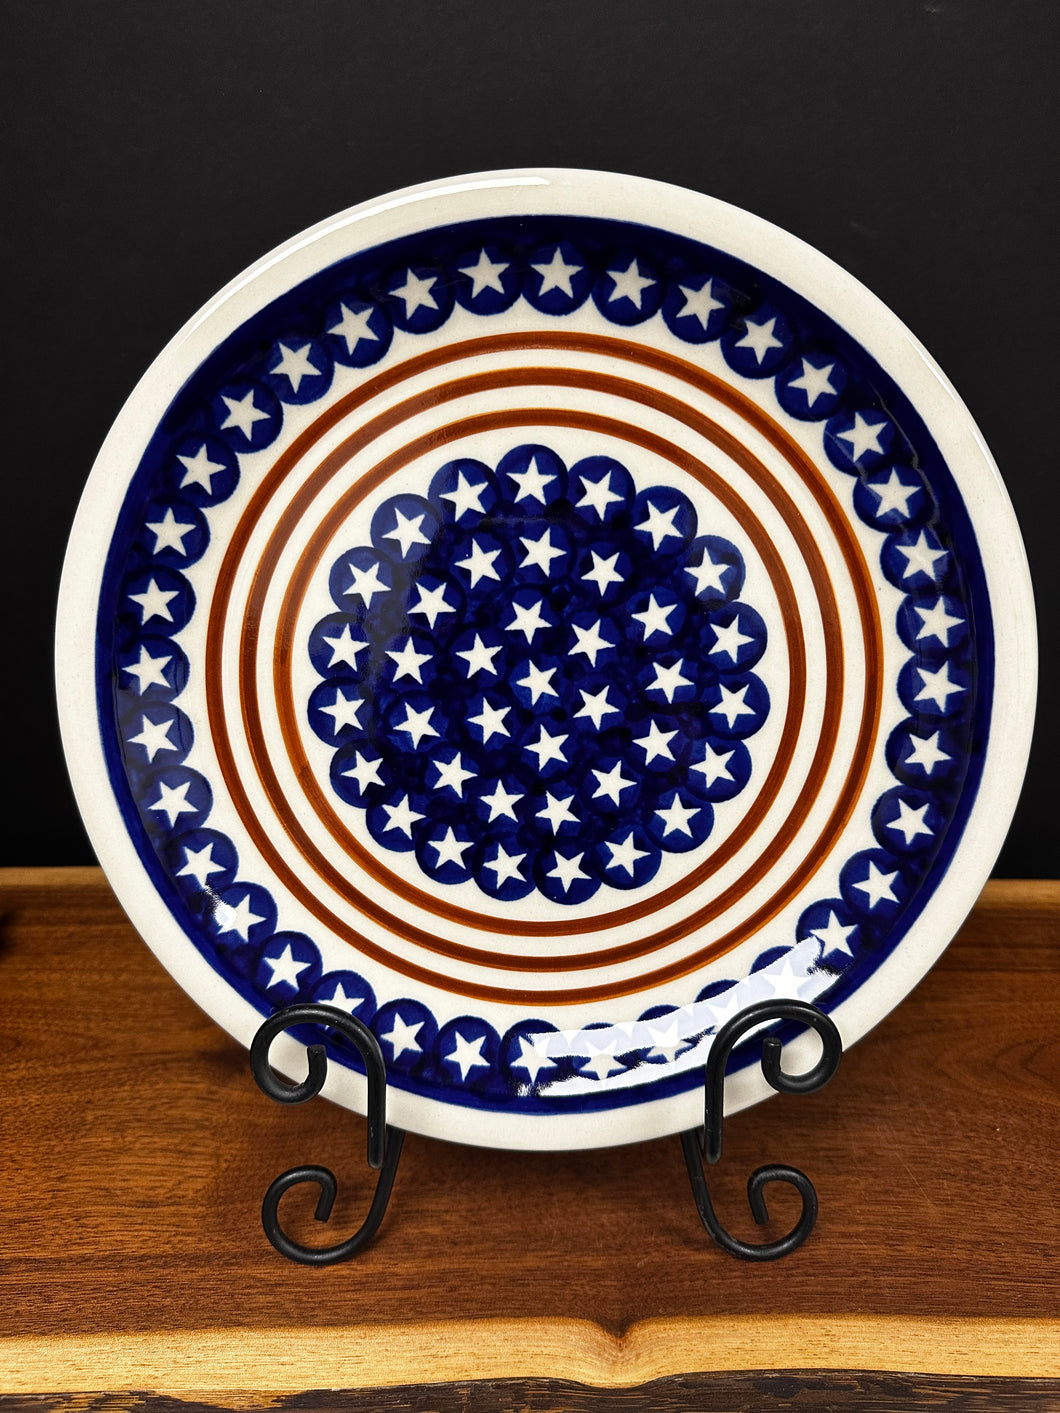 Dinner Plate 10.75” - Stars & Stripes